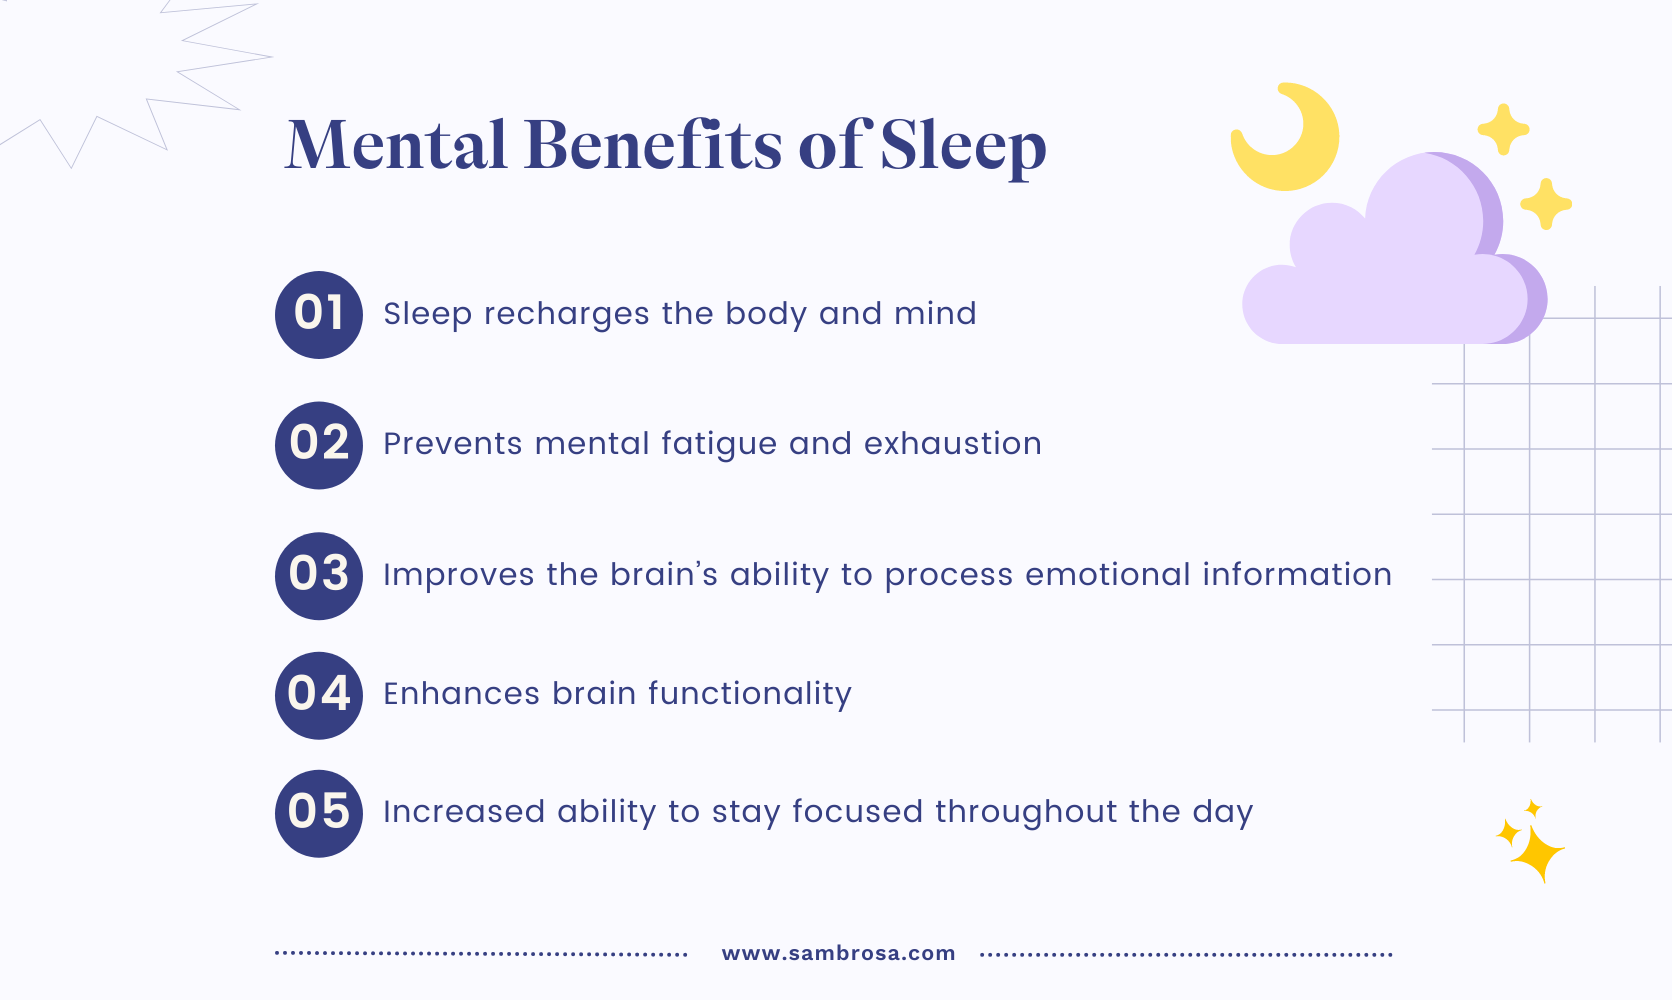 Mental benefits of sleep